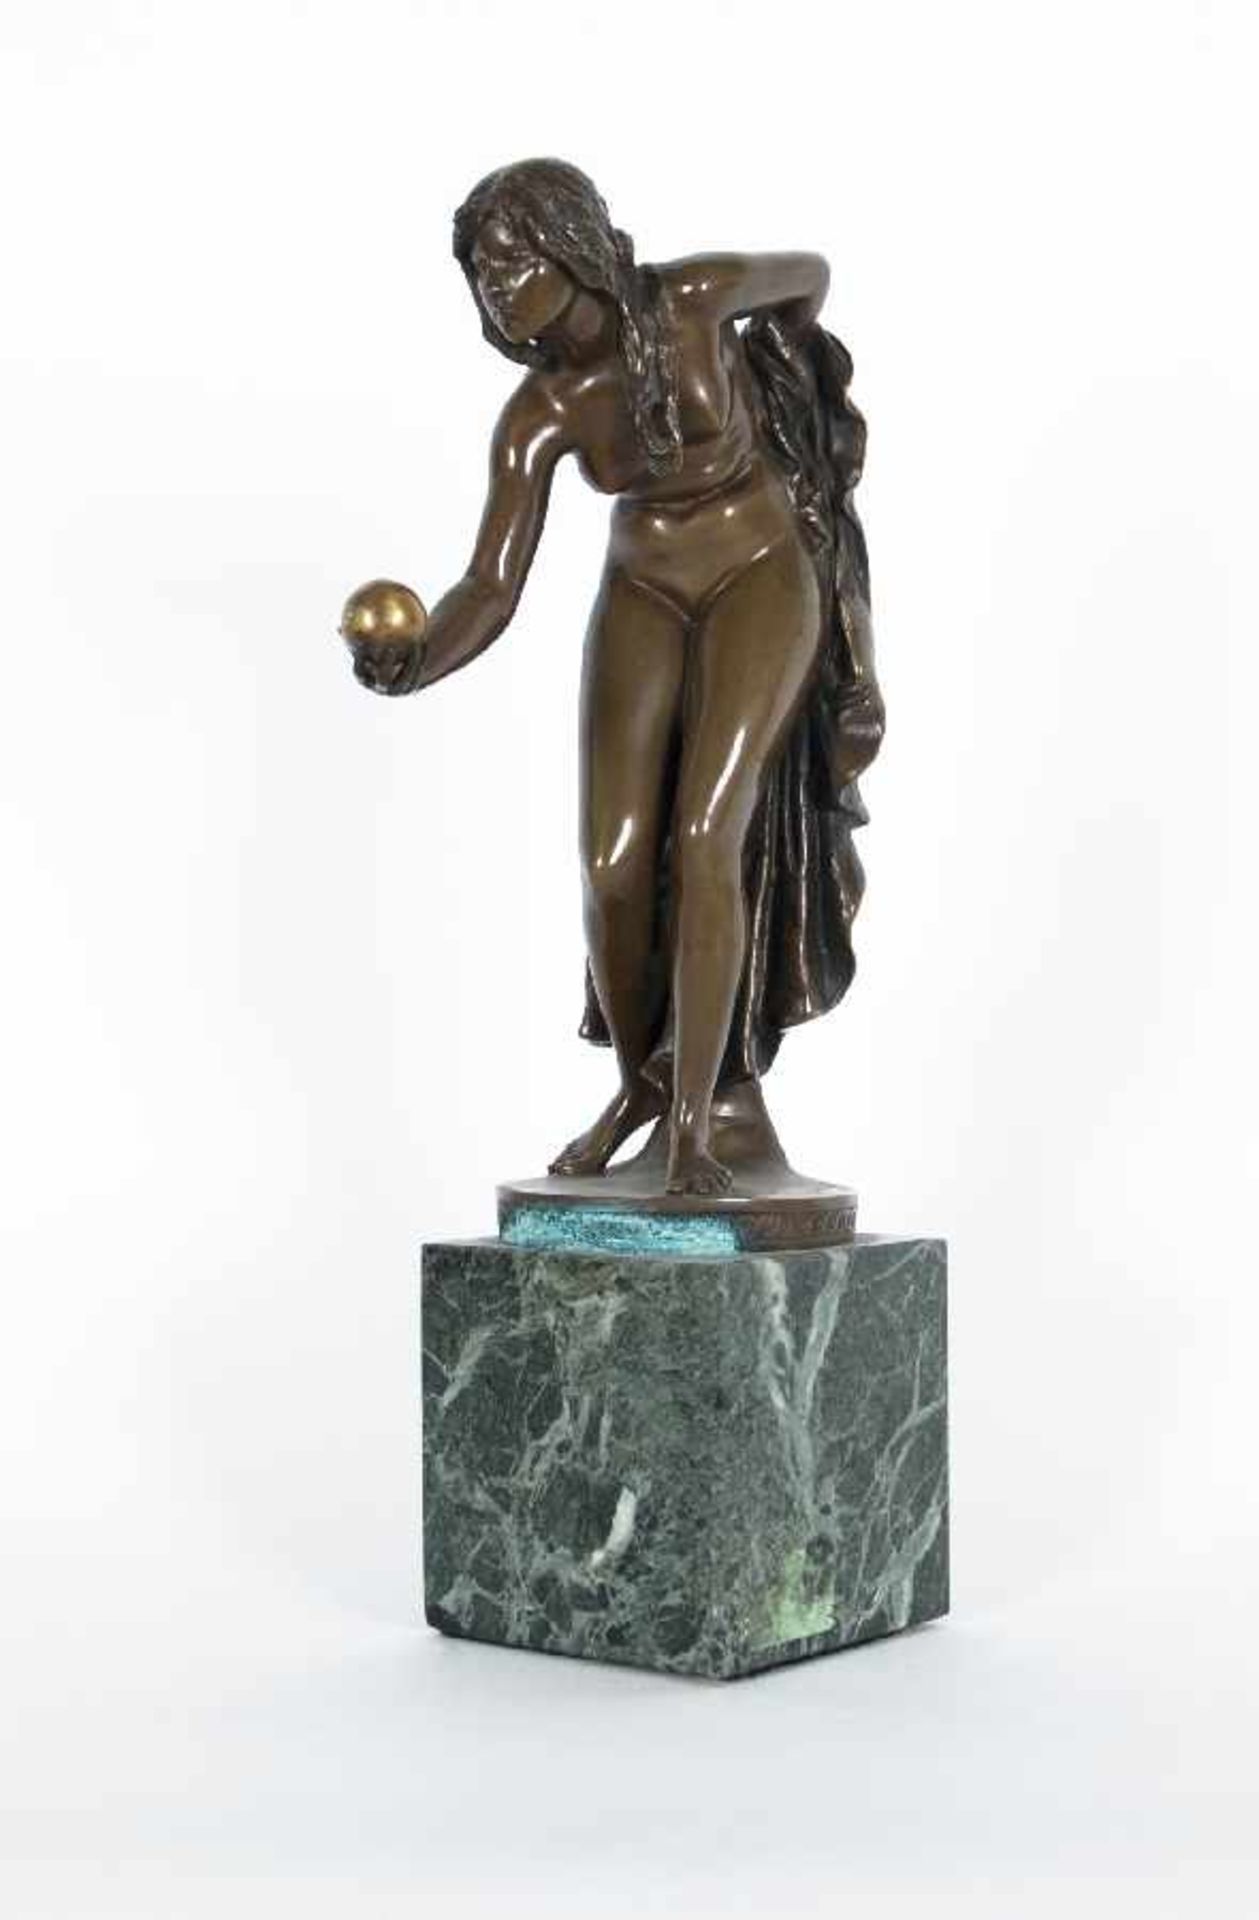 Walter Schott 1861 - 1938 Kugelspielerin Bronze; H 36 cm, B 9,5 cm, T 18 cm; bezeichnet "Walter